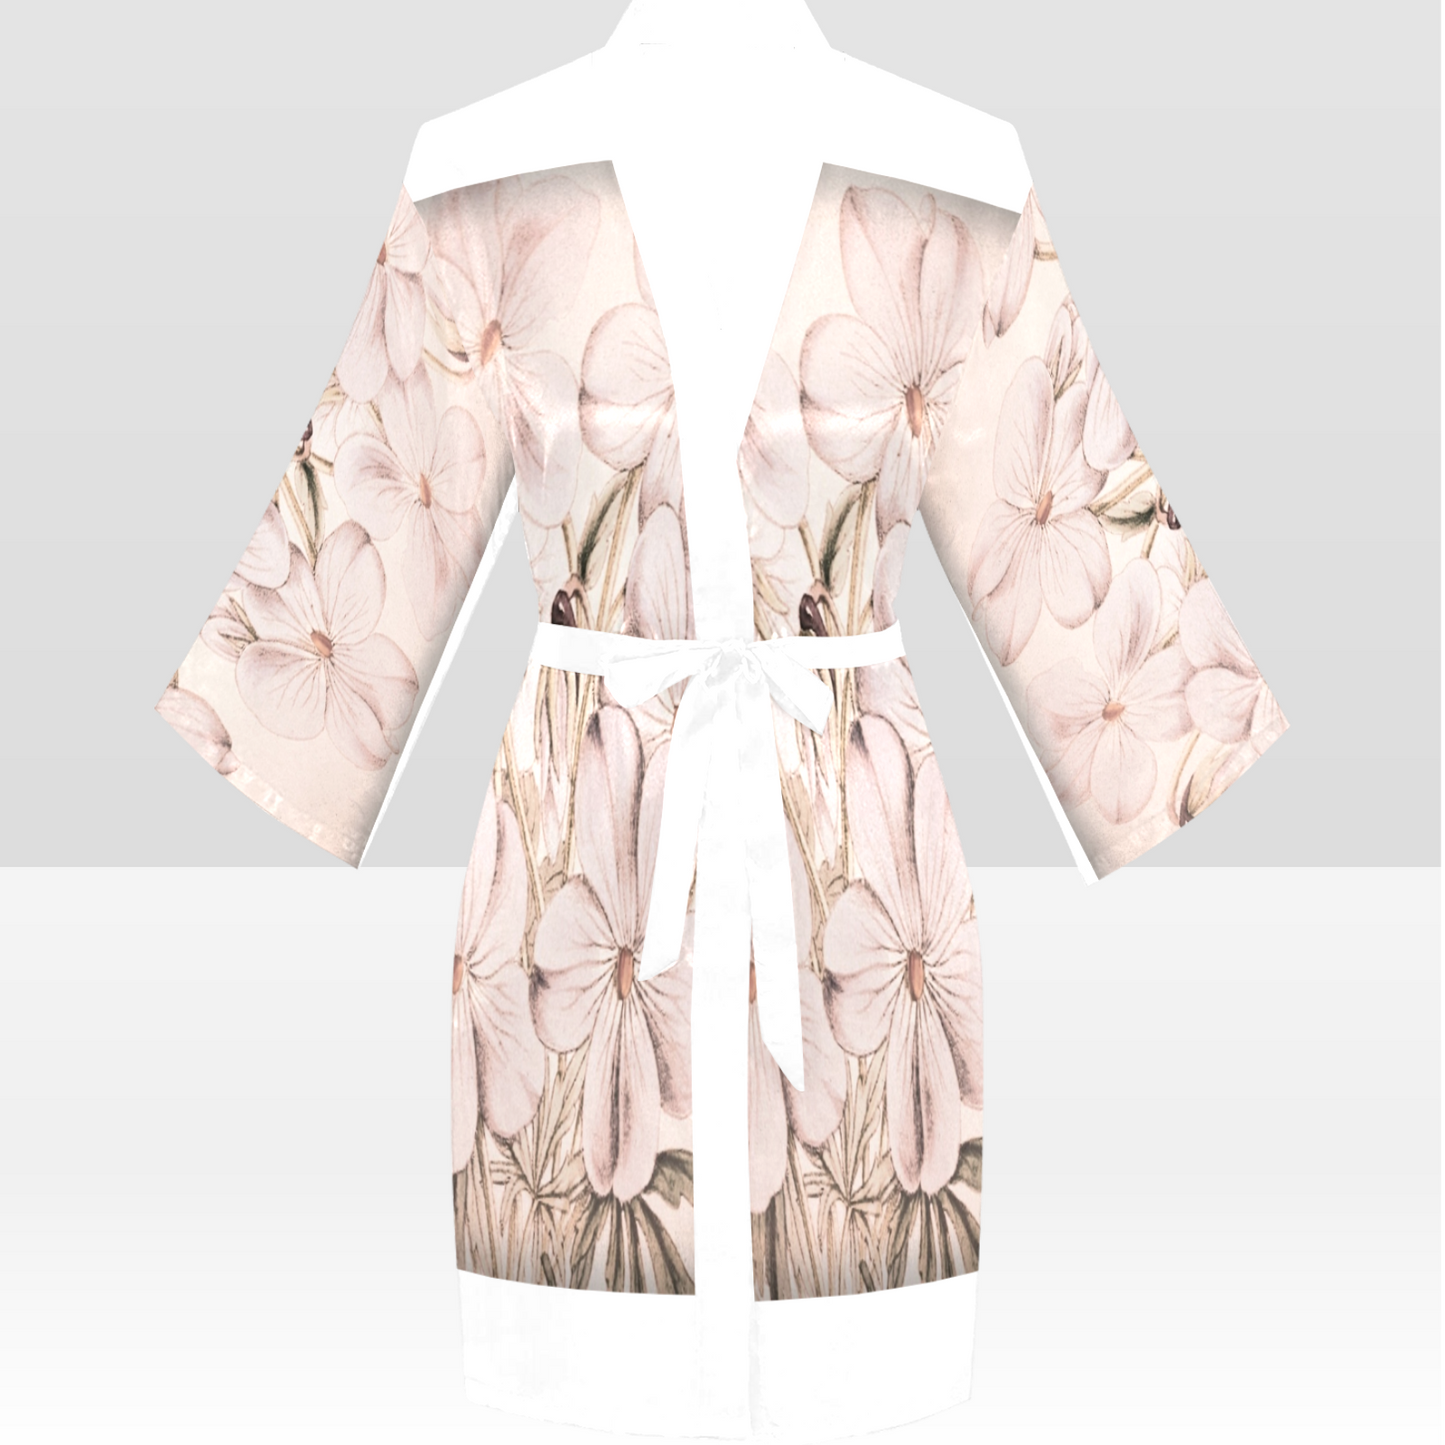 Vintage Floral Kimono Robe, Black or White Trim, Sizes XS to 2XL, Design 13x